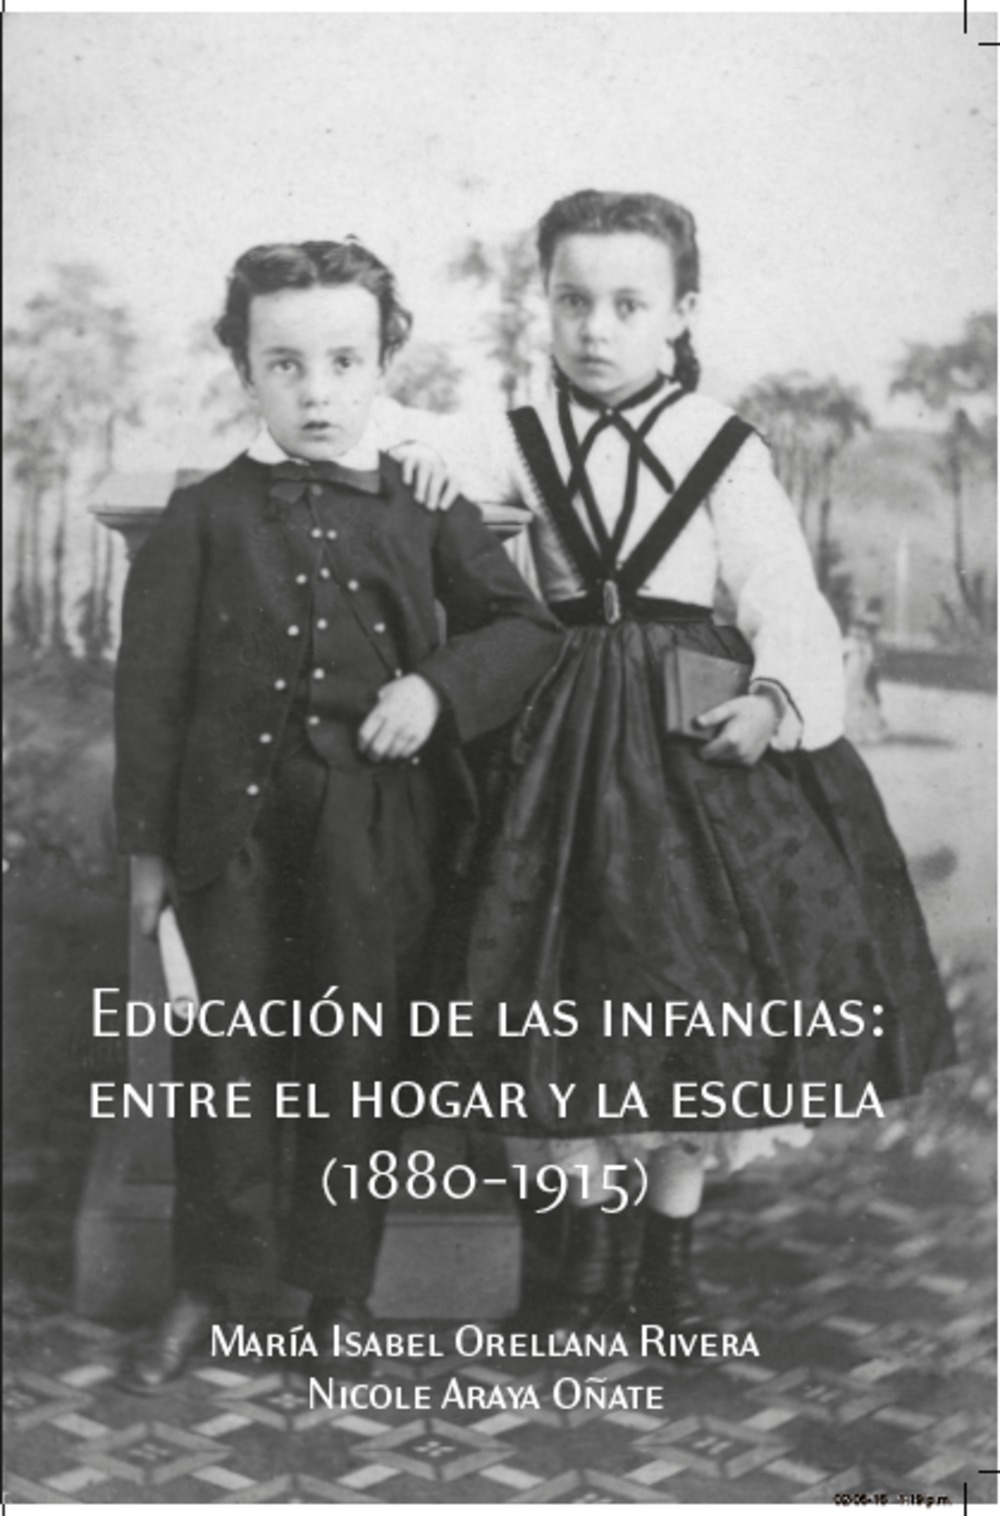  Educación de las infancias: entre el hogar y la escuela (1880-1915)